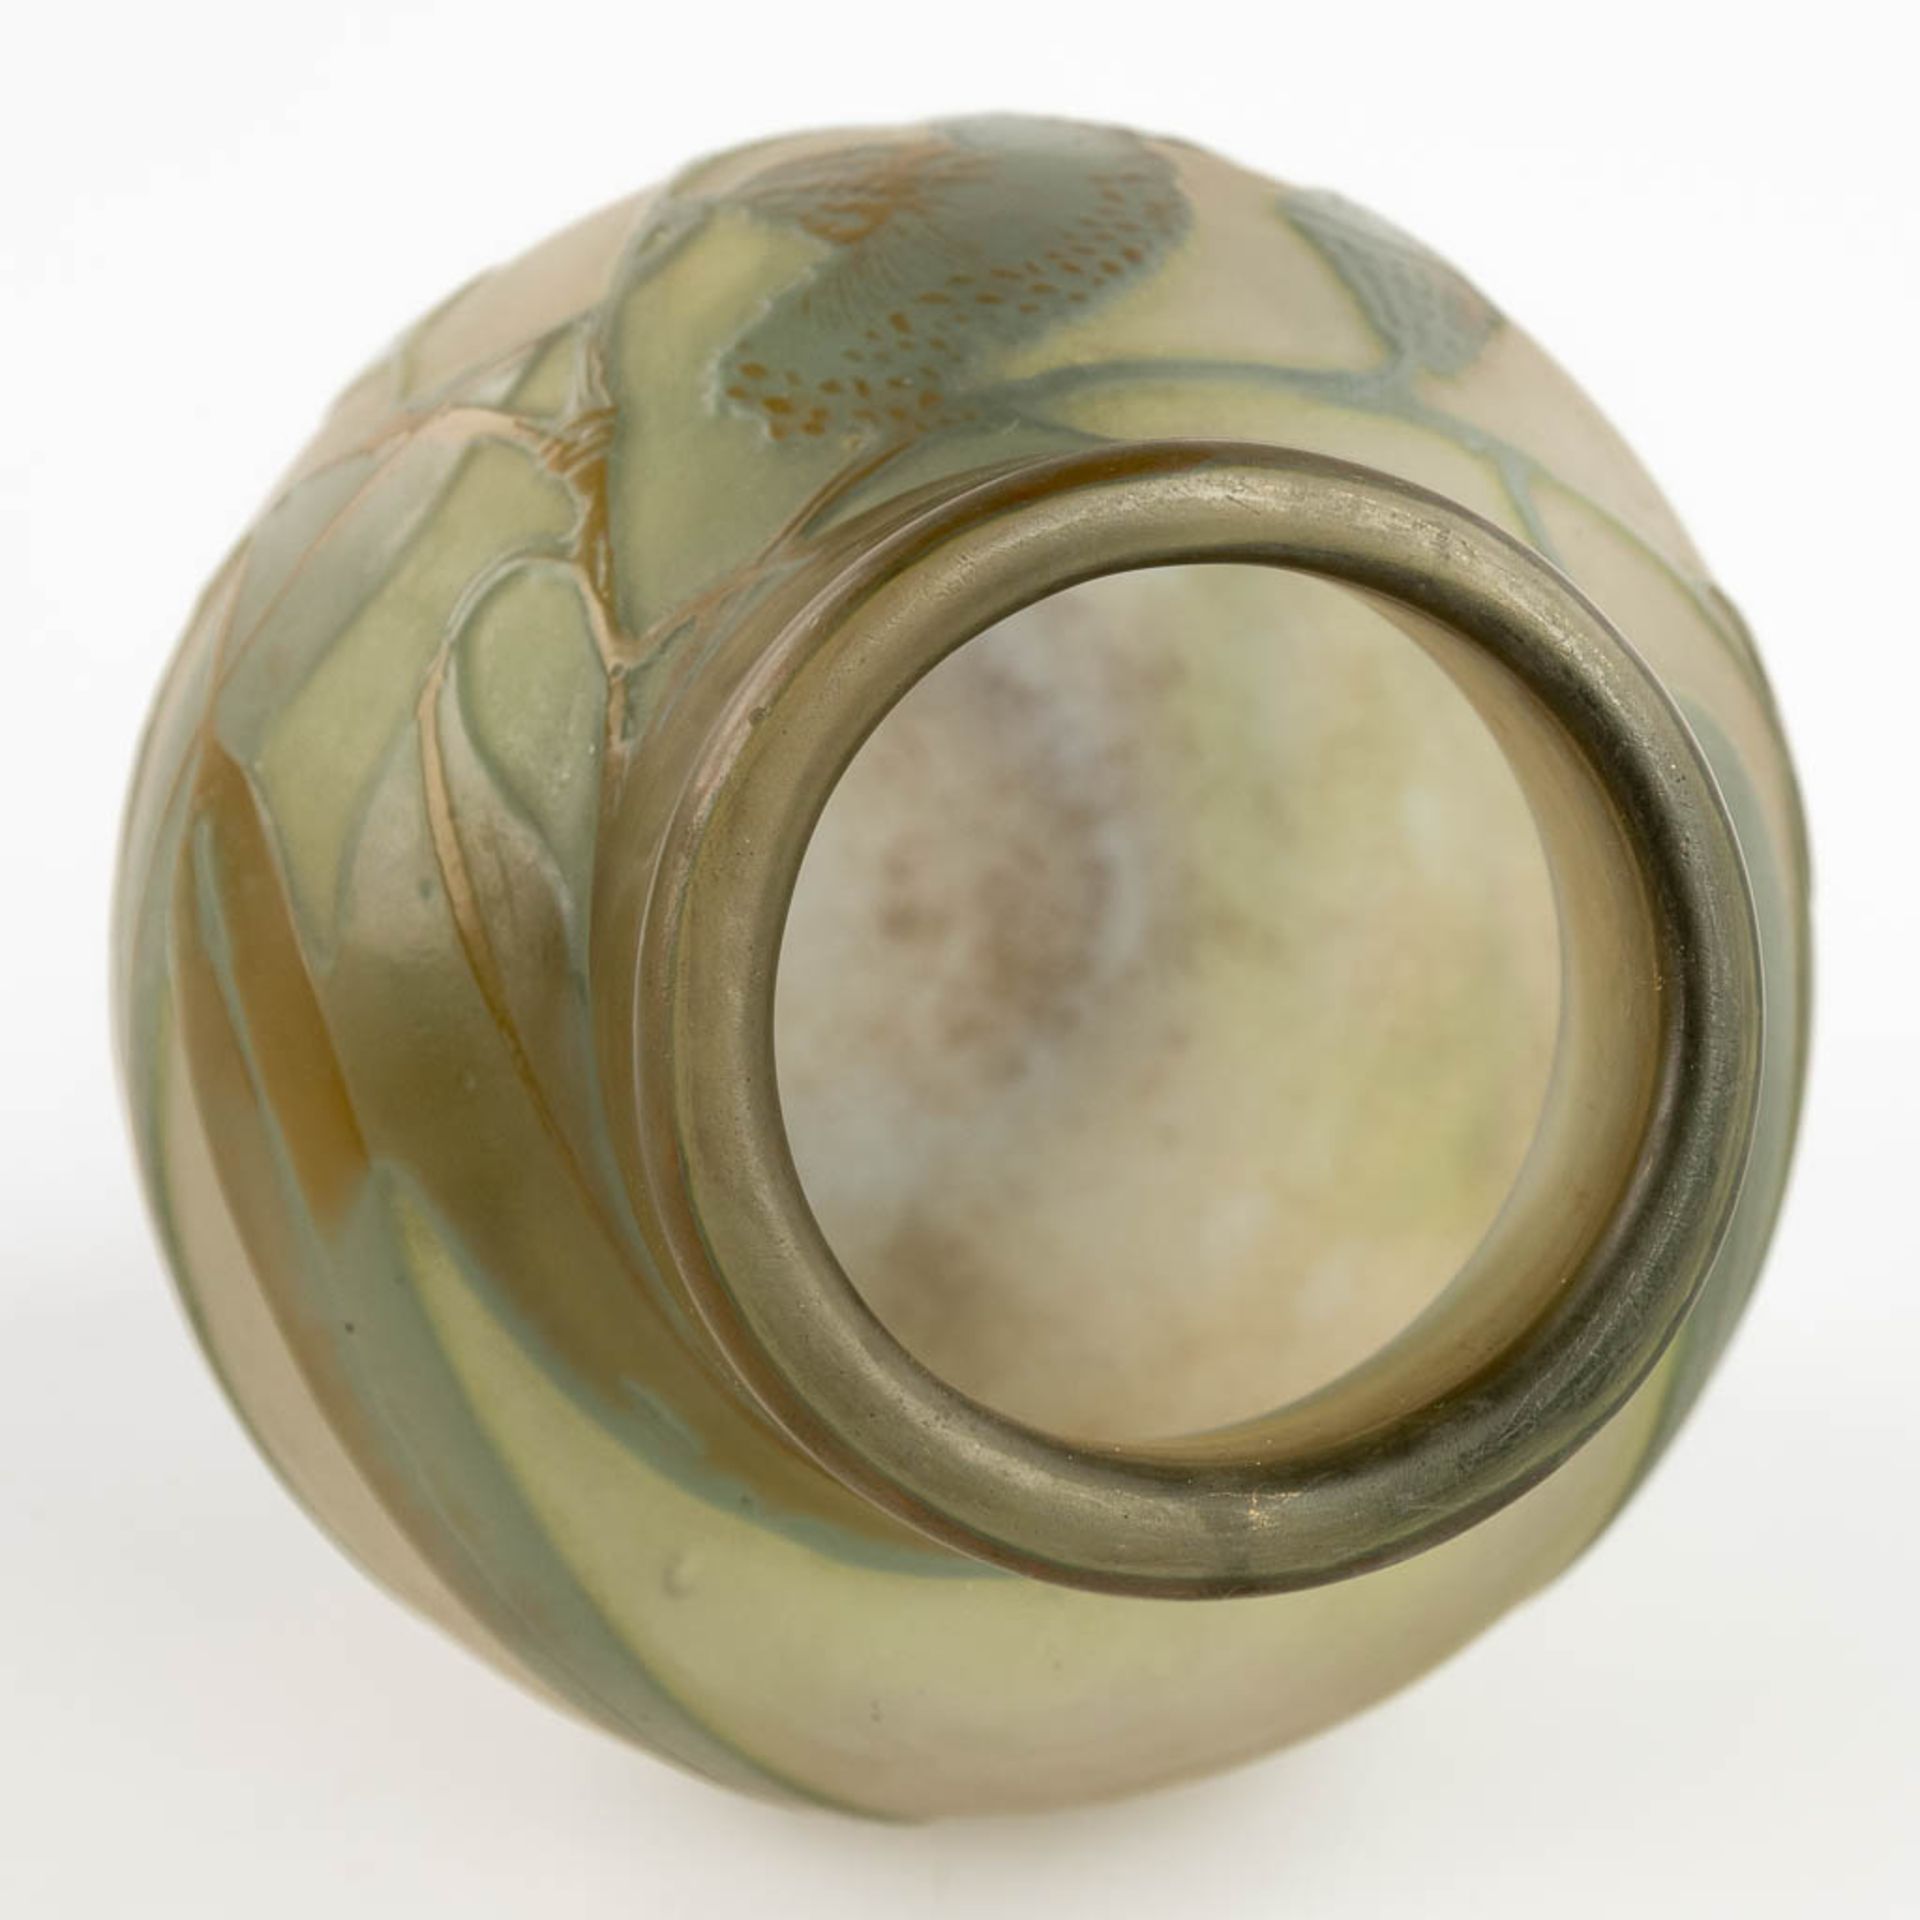 Emile GALLE (1846-1904) 'Vase' pate de verre glass. Circa 1905-1908. (H:18 x D:13 cm) - Bild 8 aus 10